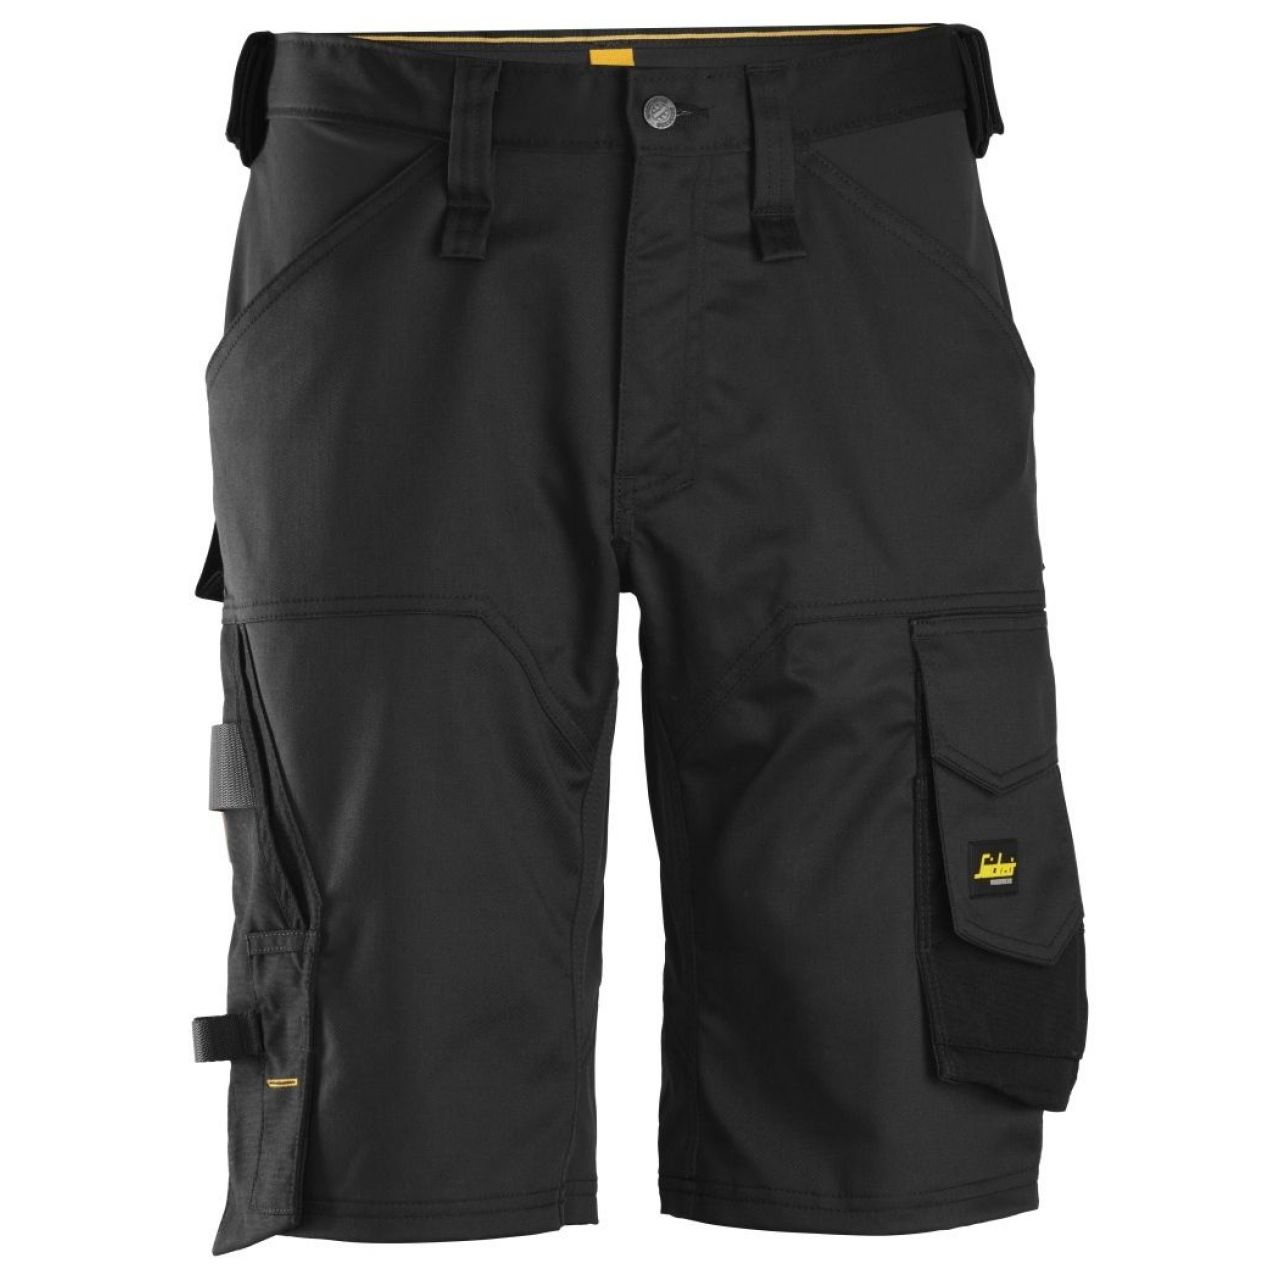 Pantalon corto elastico holgado AllroundWork negro talla 060